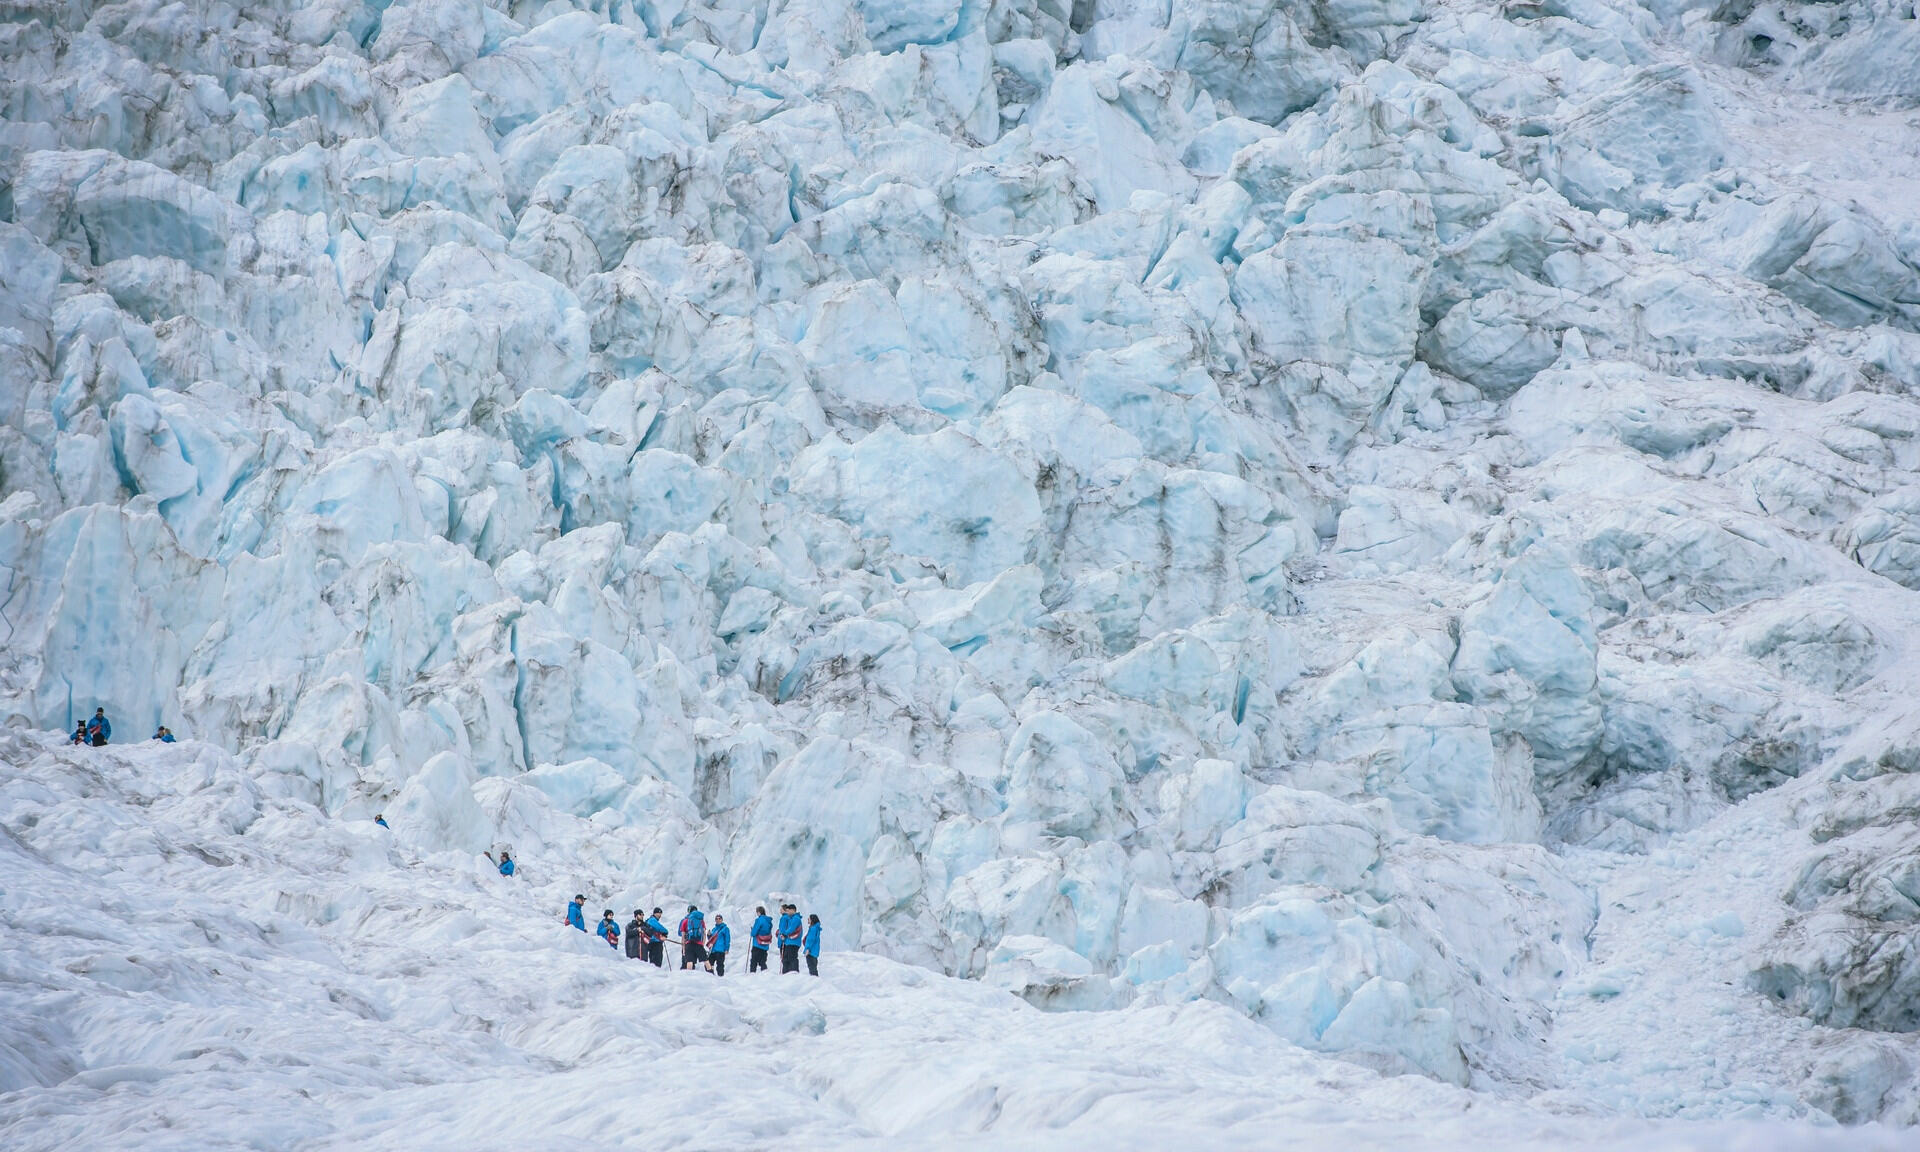 -Franz-Josef-glacier-West-Coast